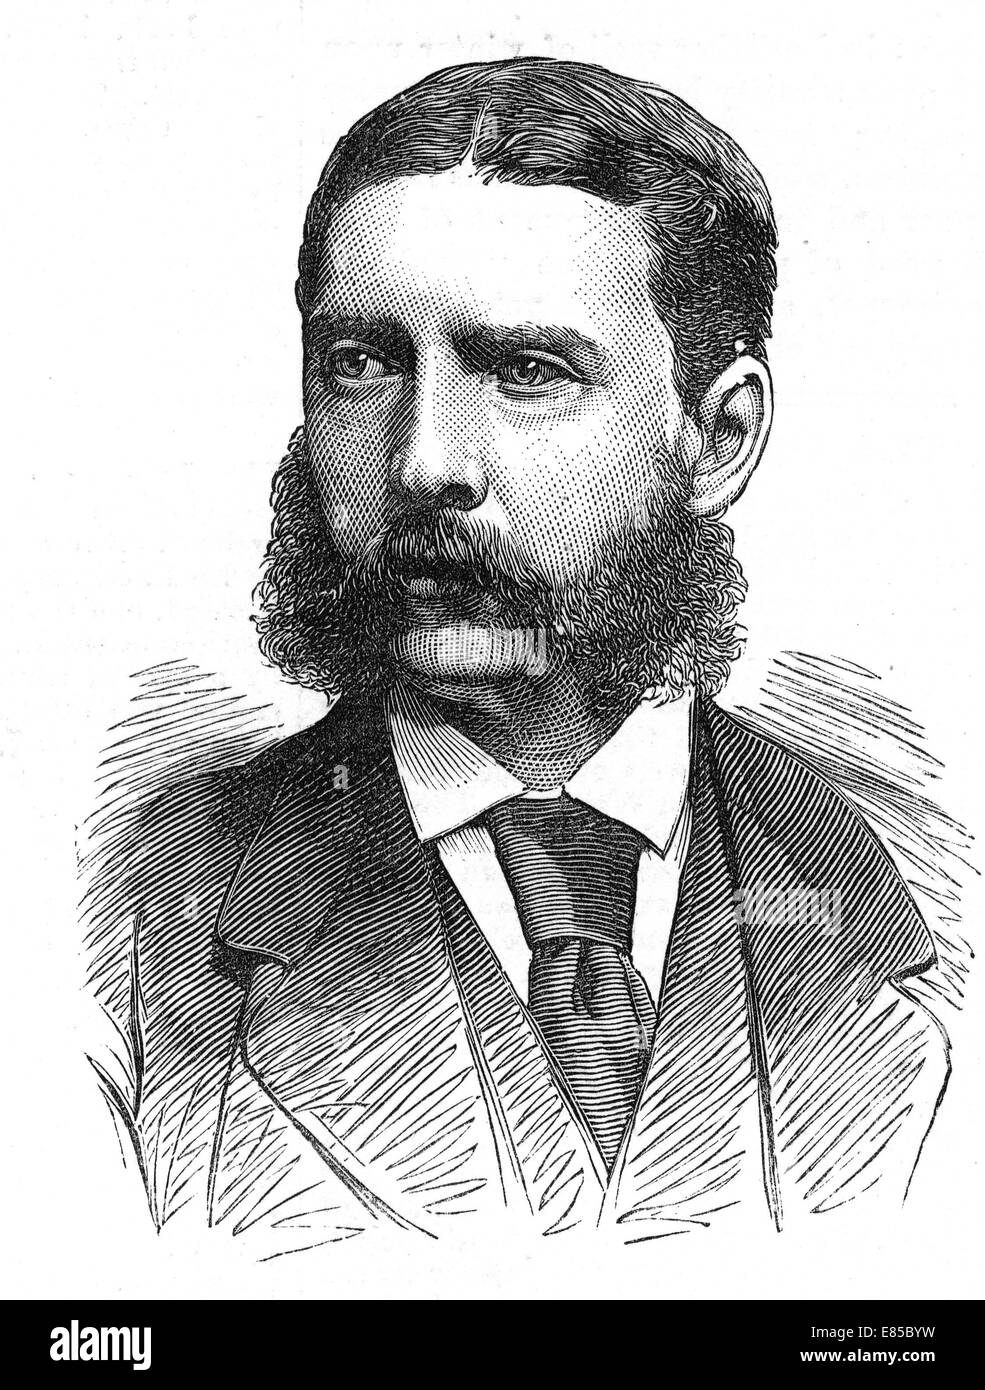 BROMHEAD GONVILLE VC (1845-1891) Officier de l'armée britannique reçu la Croix de Victoria pour son rôle dans la défense de Rorke's Drift en 1879 Banque D'Images